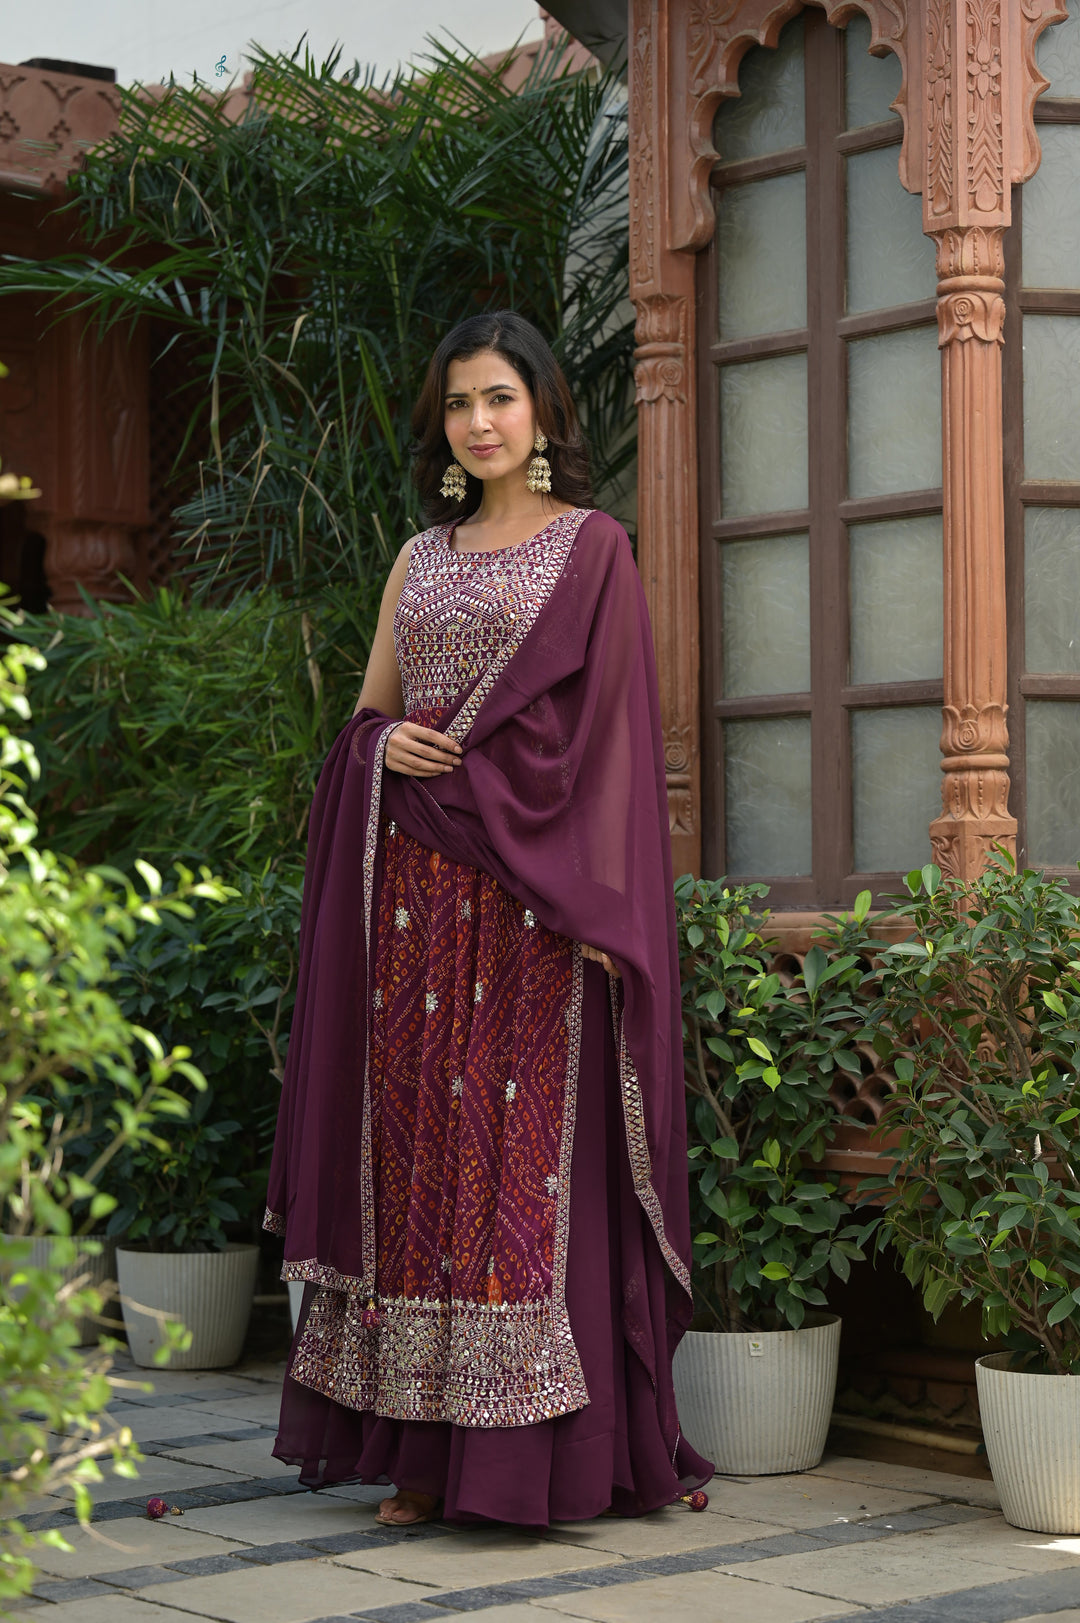 Elegant Brown Designer Sharara Salwar Suit for Weddings & Parties in Georgette Silk